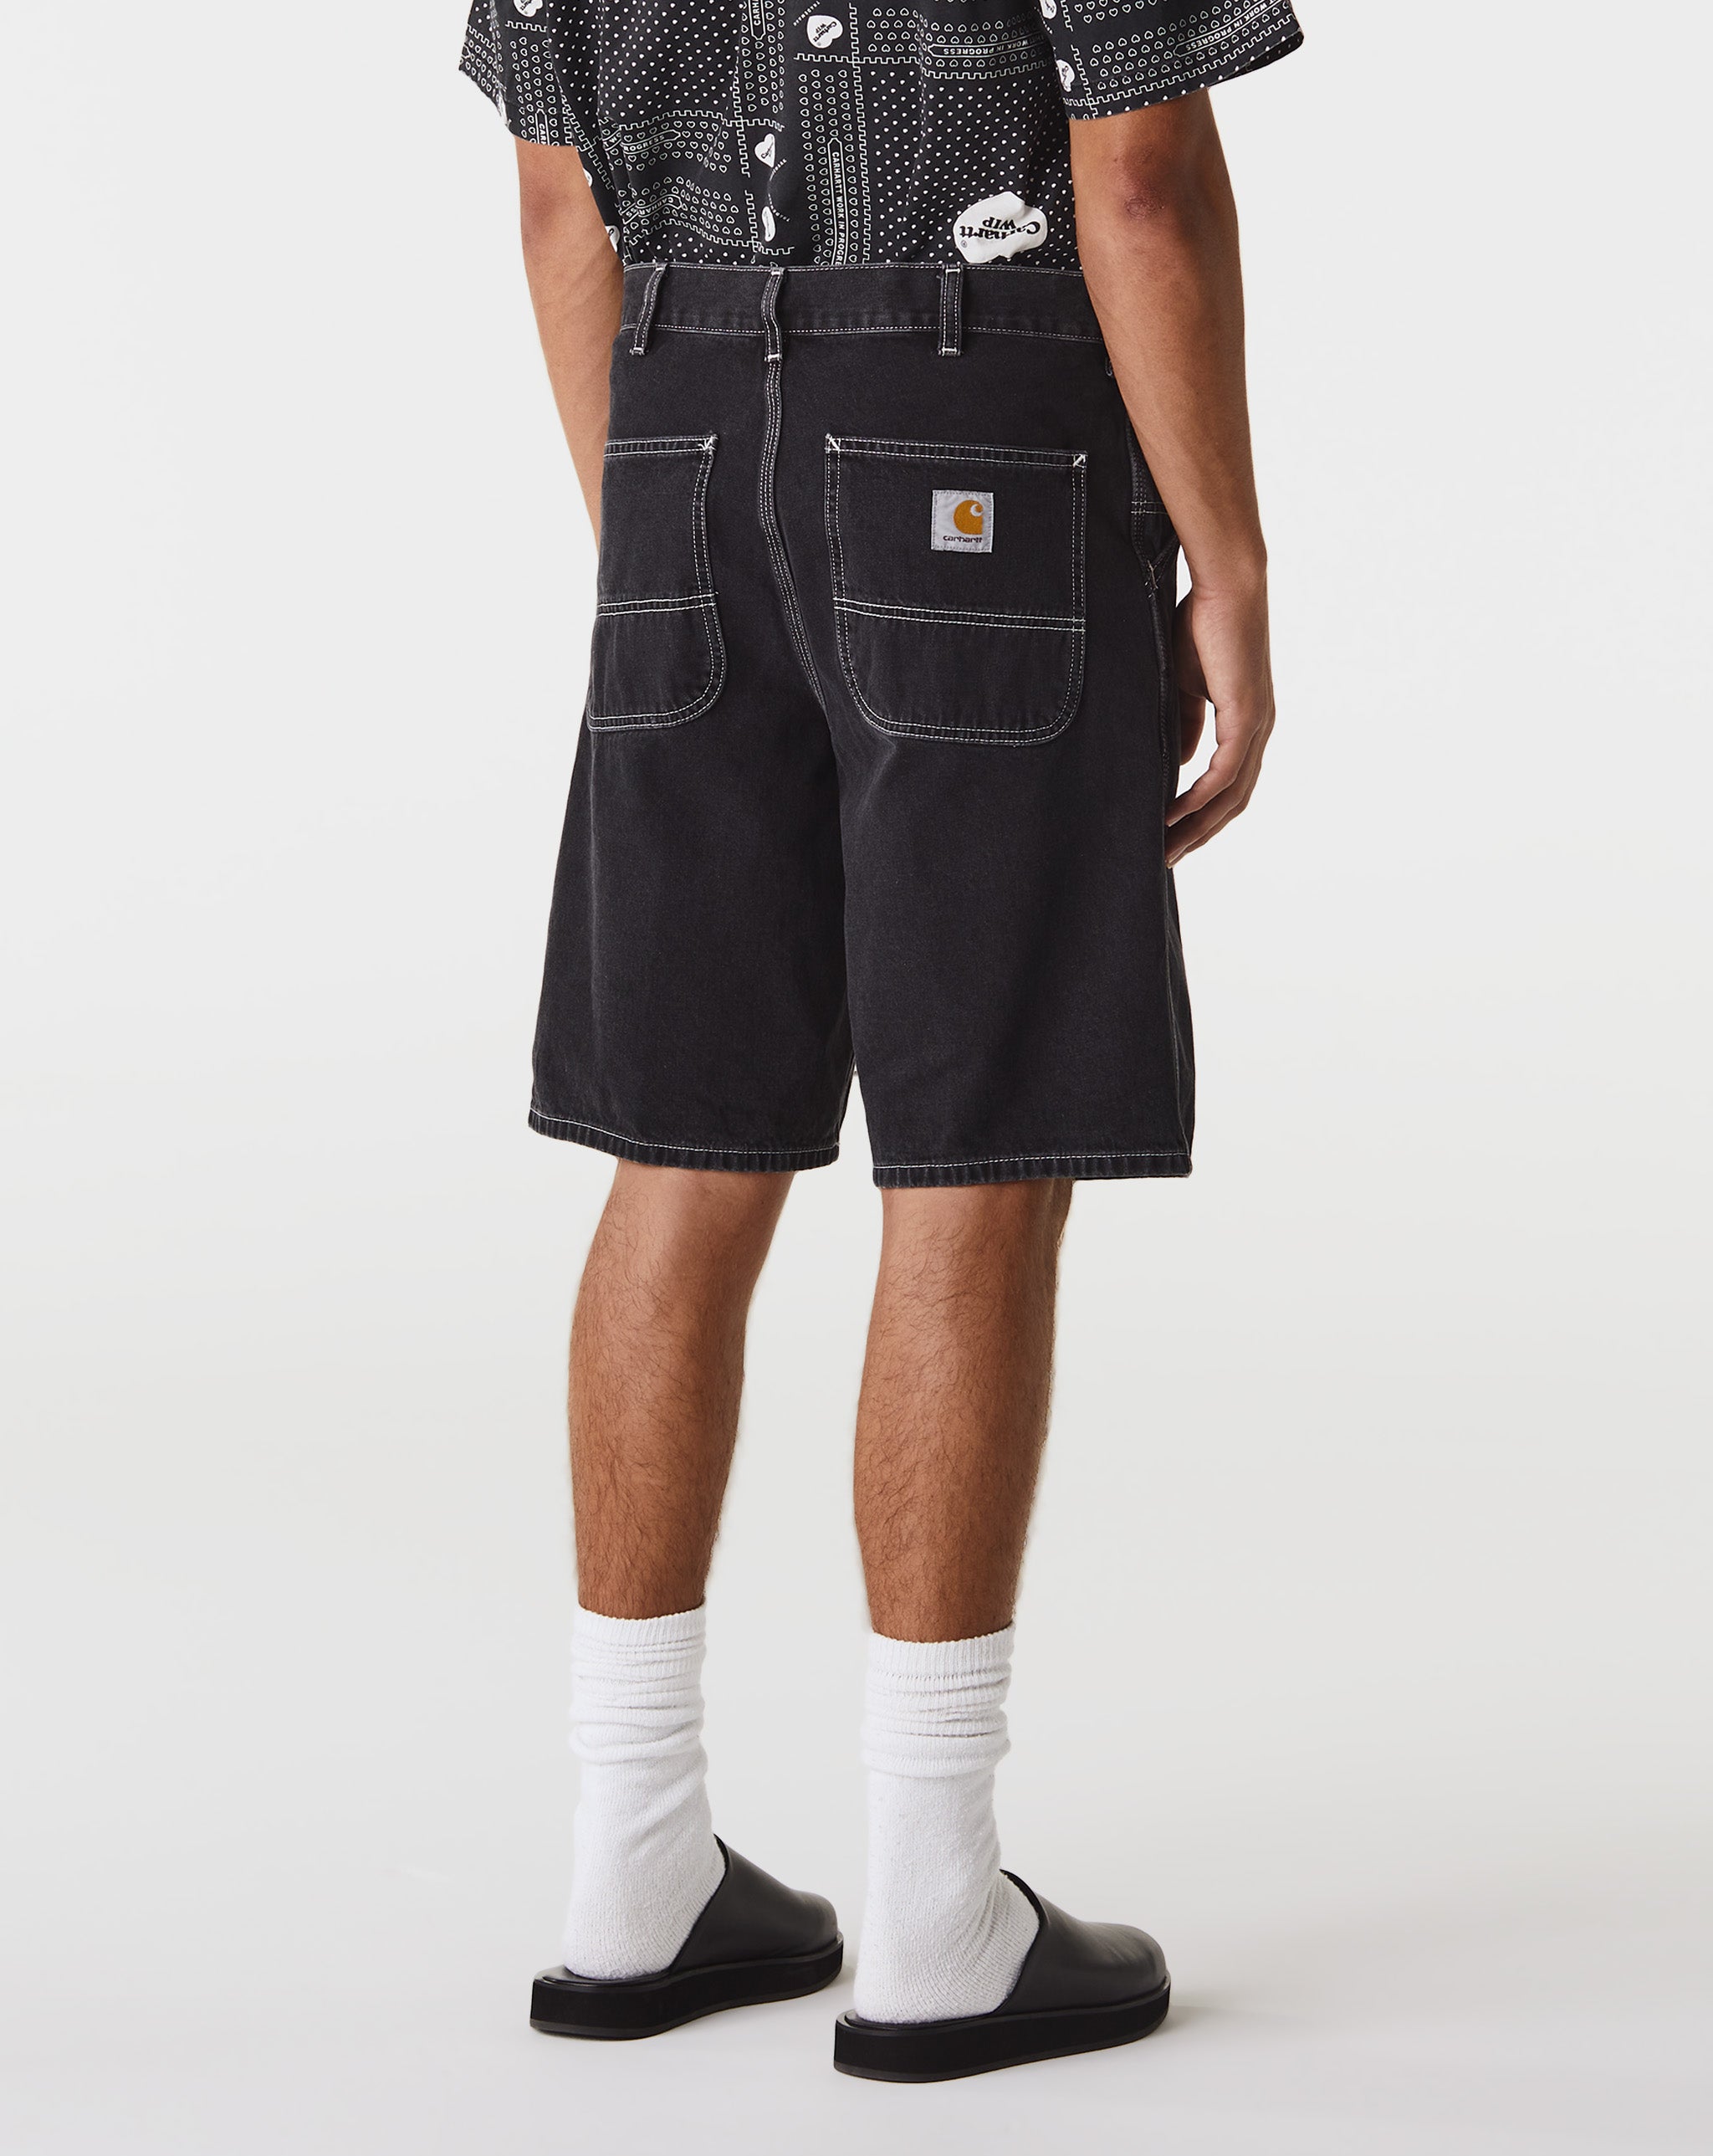 Carhartt WIP Simple Shorts  - Cheap Urlfreeze Jordan outlet